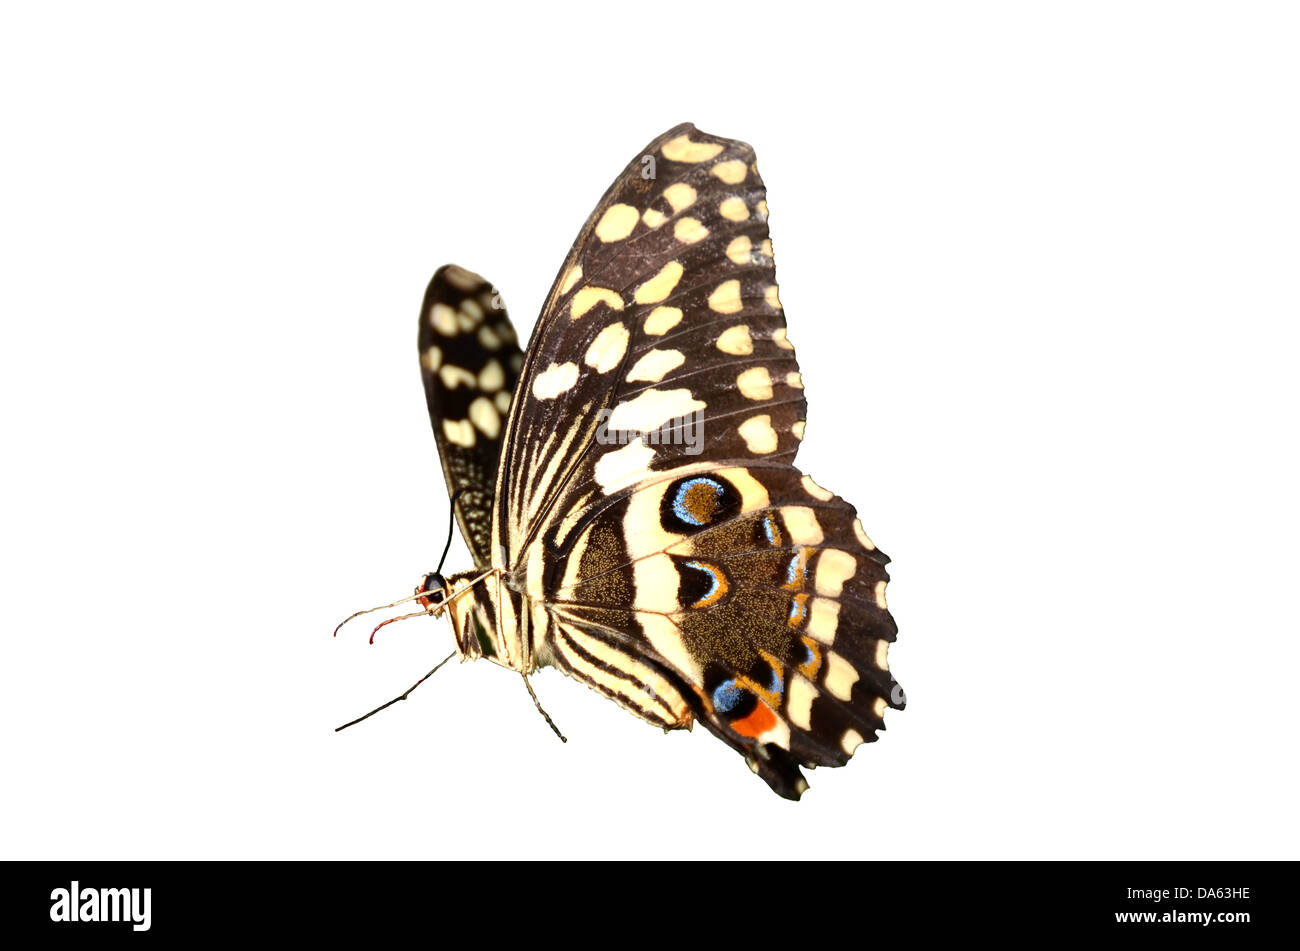 Il Citrus a coda di rondine, butterfly papilio, demodocus, dall'Africa subsahariana. Isolati contro uno sfondo bianco Foto Stock